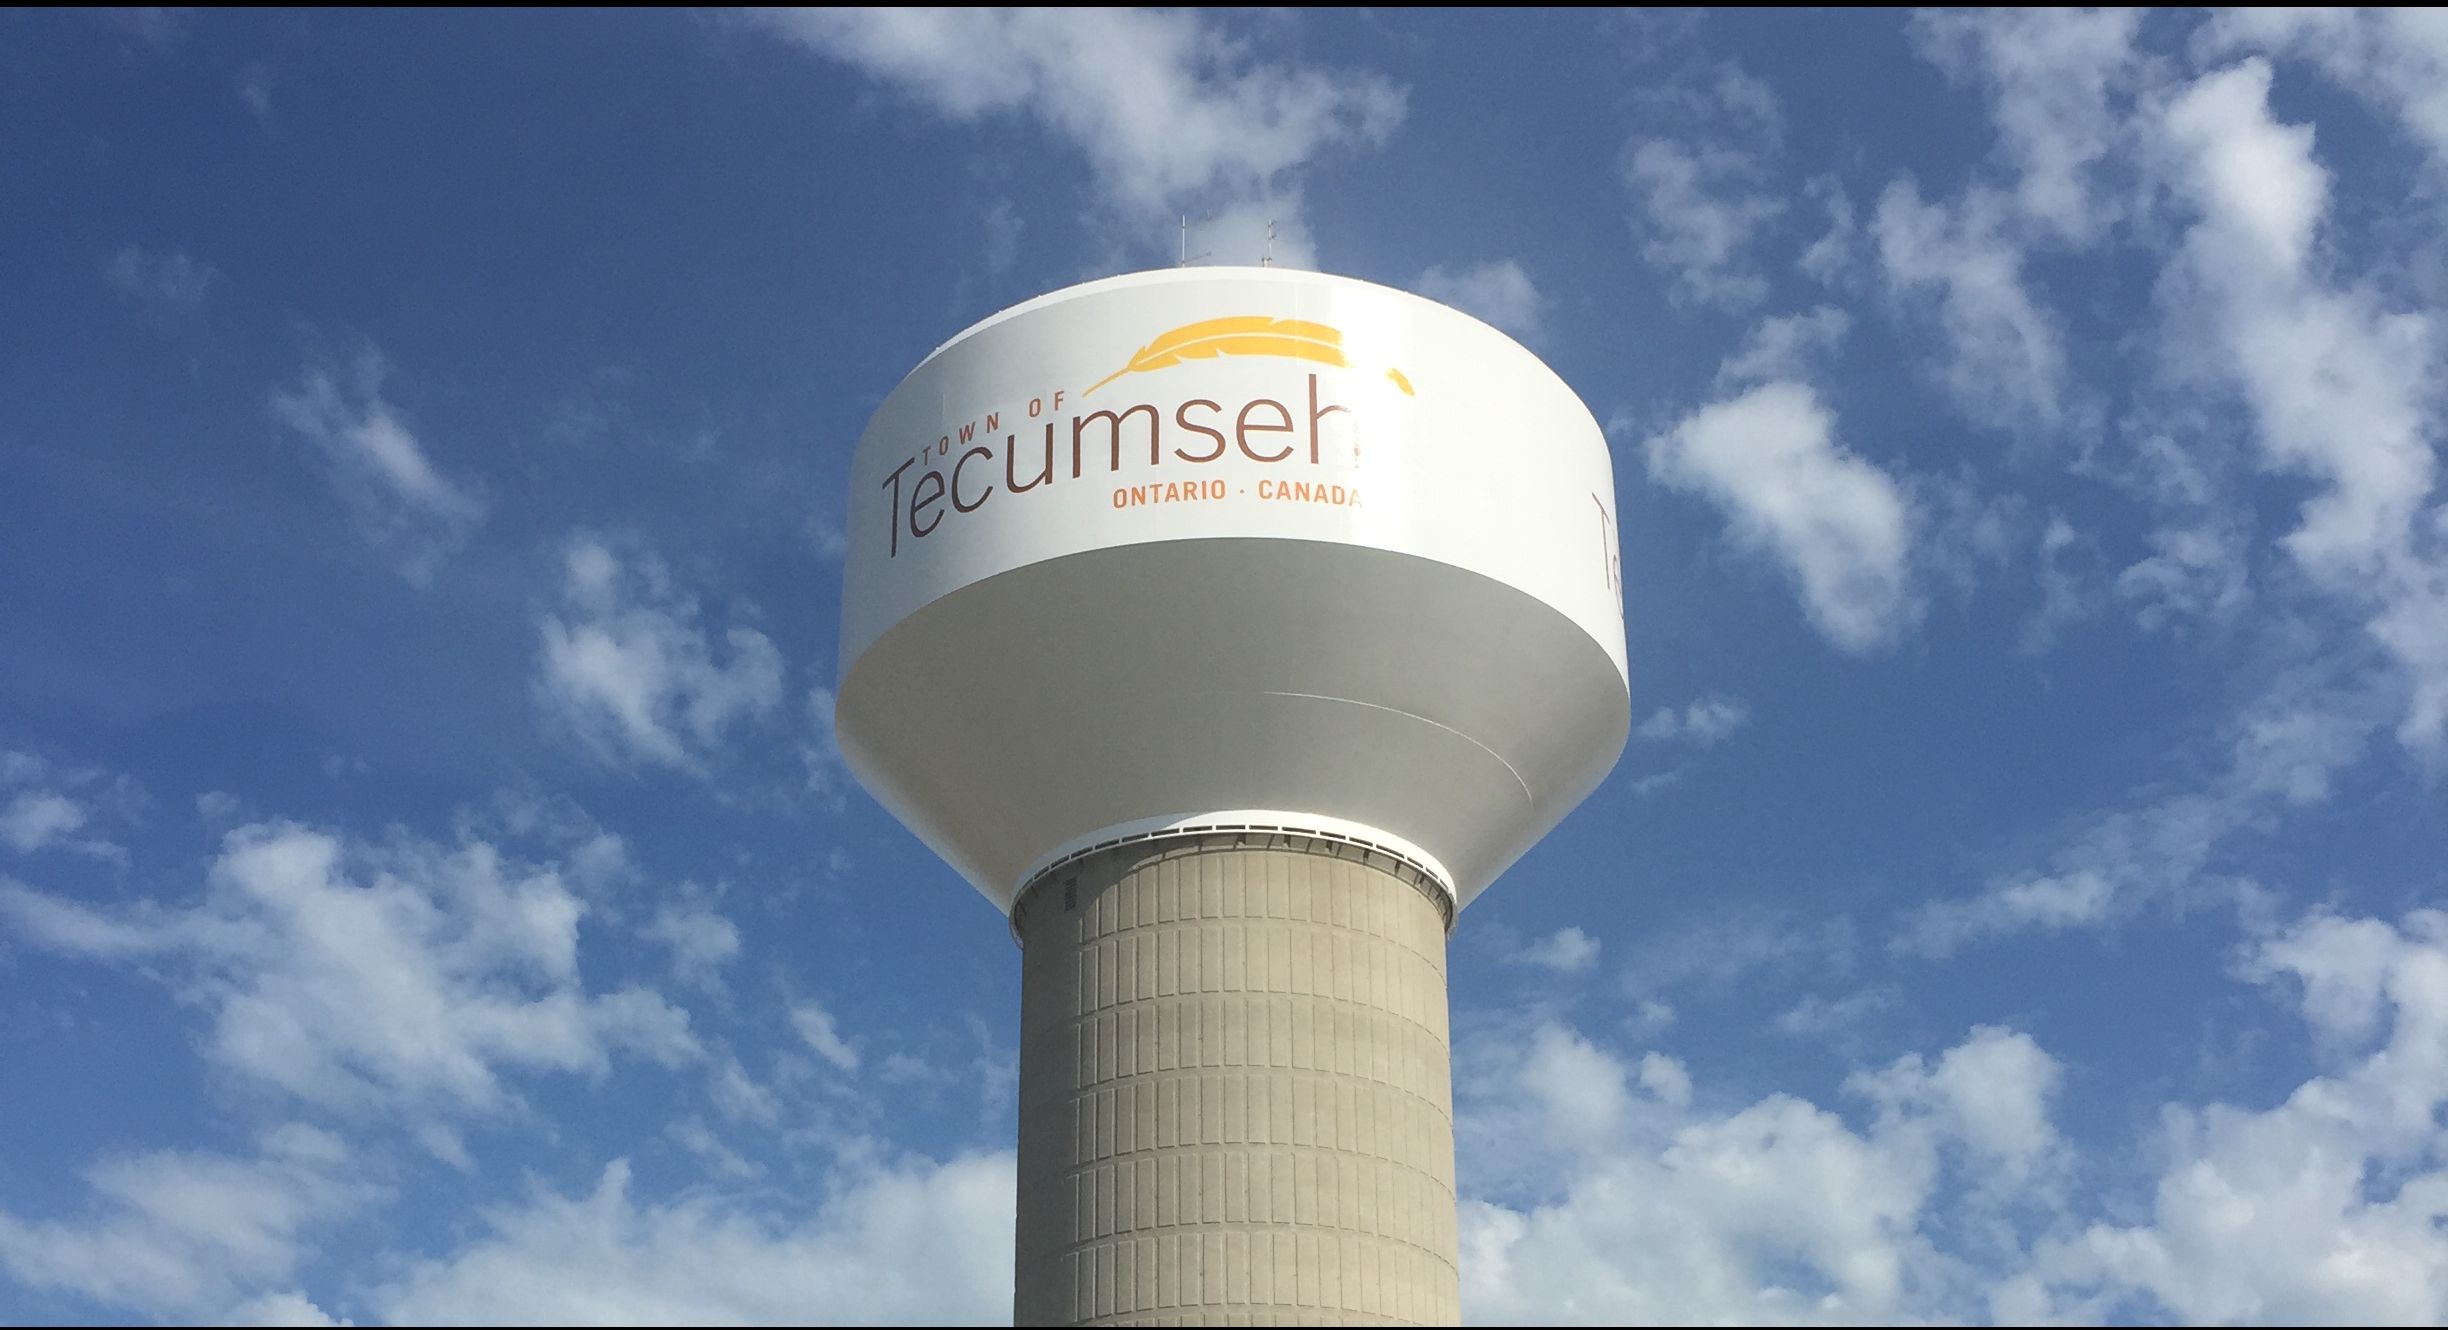 Tecumseh water tower